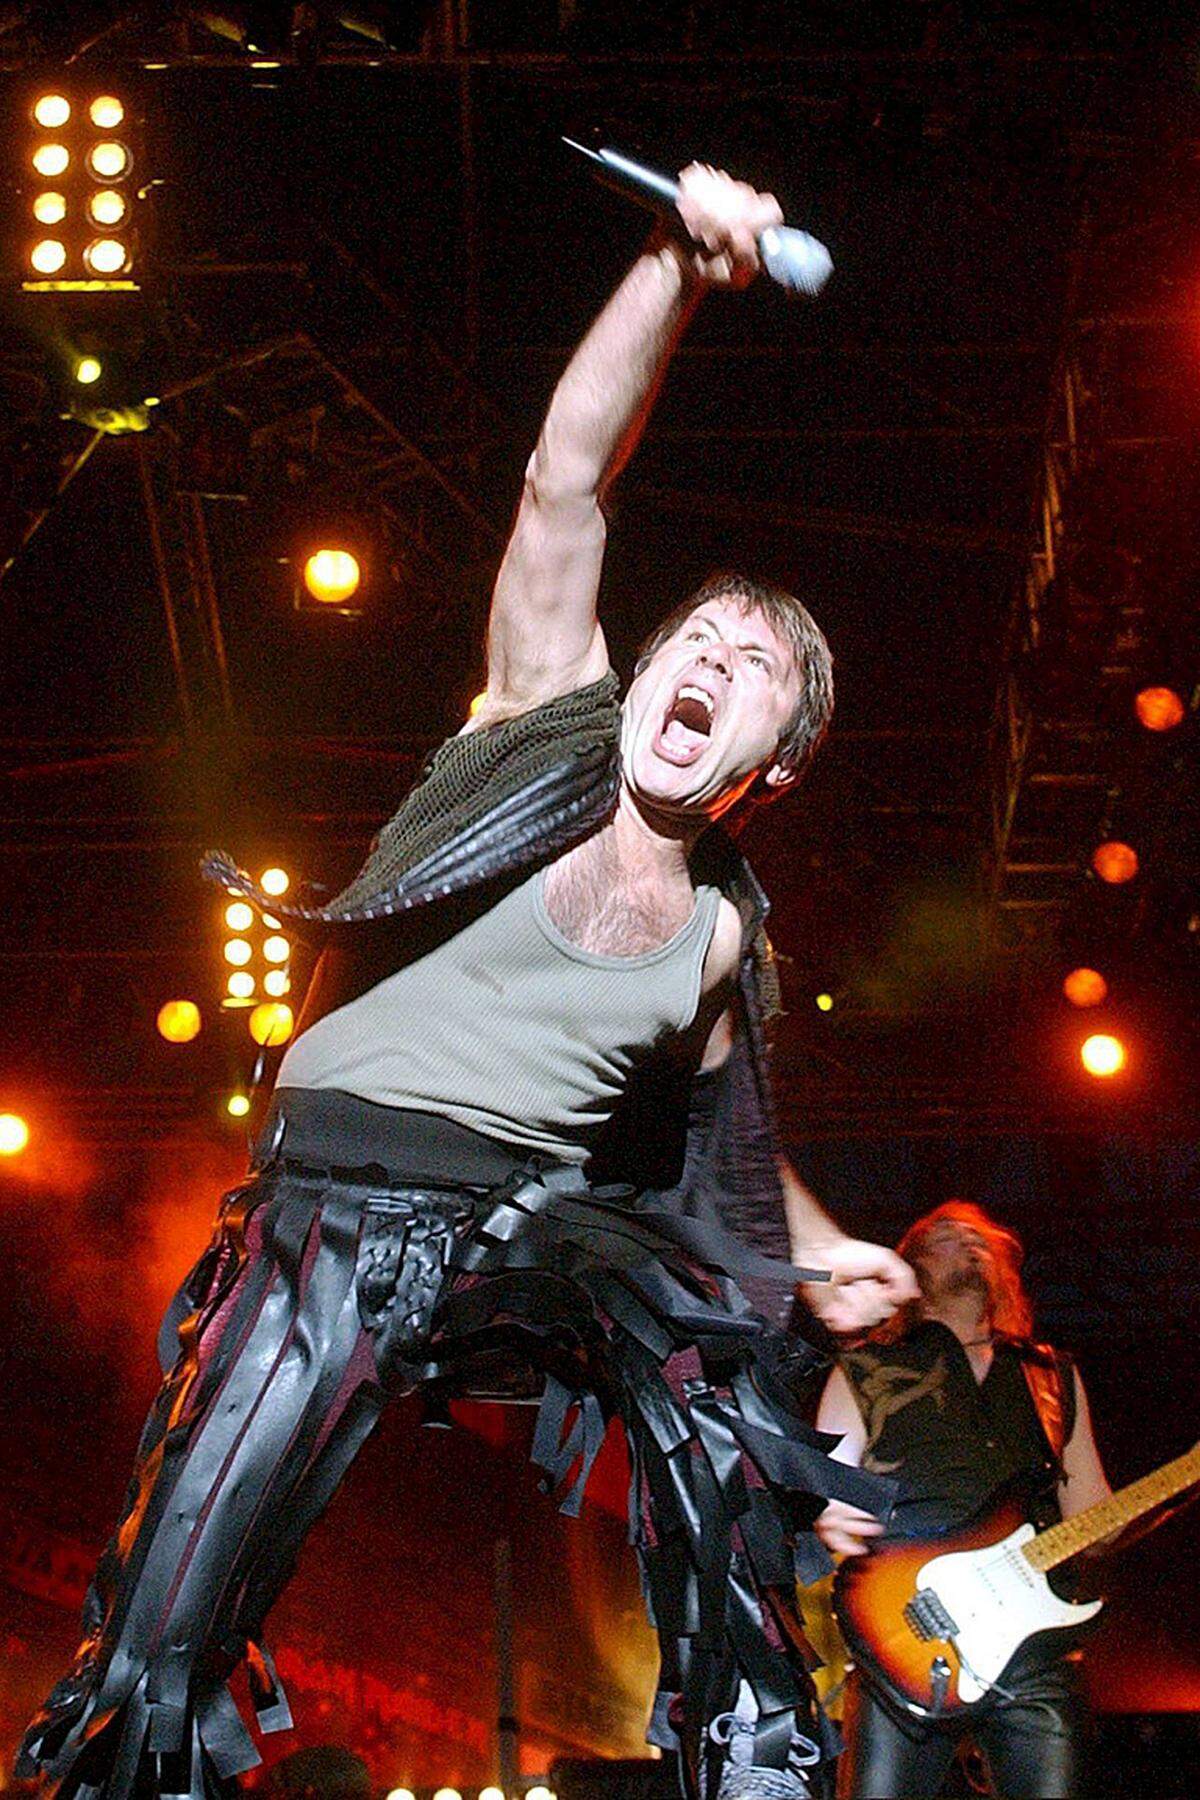 Anders ging die Heavy Metal Band Iron Maiden schon 1986 mit aufgezwungenem Playback um. Als sie im deutschen Fernsehen ihre neue Single playback "vortragen" sollten, begannen die Mitglieder kurz nach Beginn des Auftritts munter untereinander die Instrumente auszutauschen, um den Zusehern vor Augen zu führen, wie "live" Fernsehauftritte von Bands oft wirklich sind.